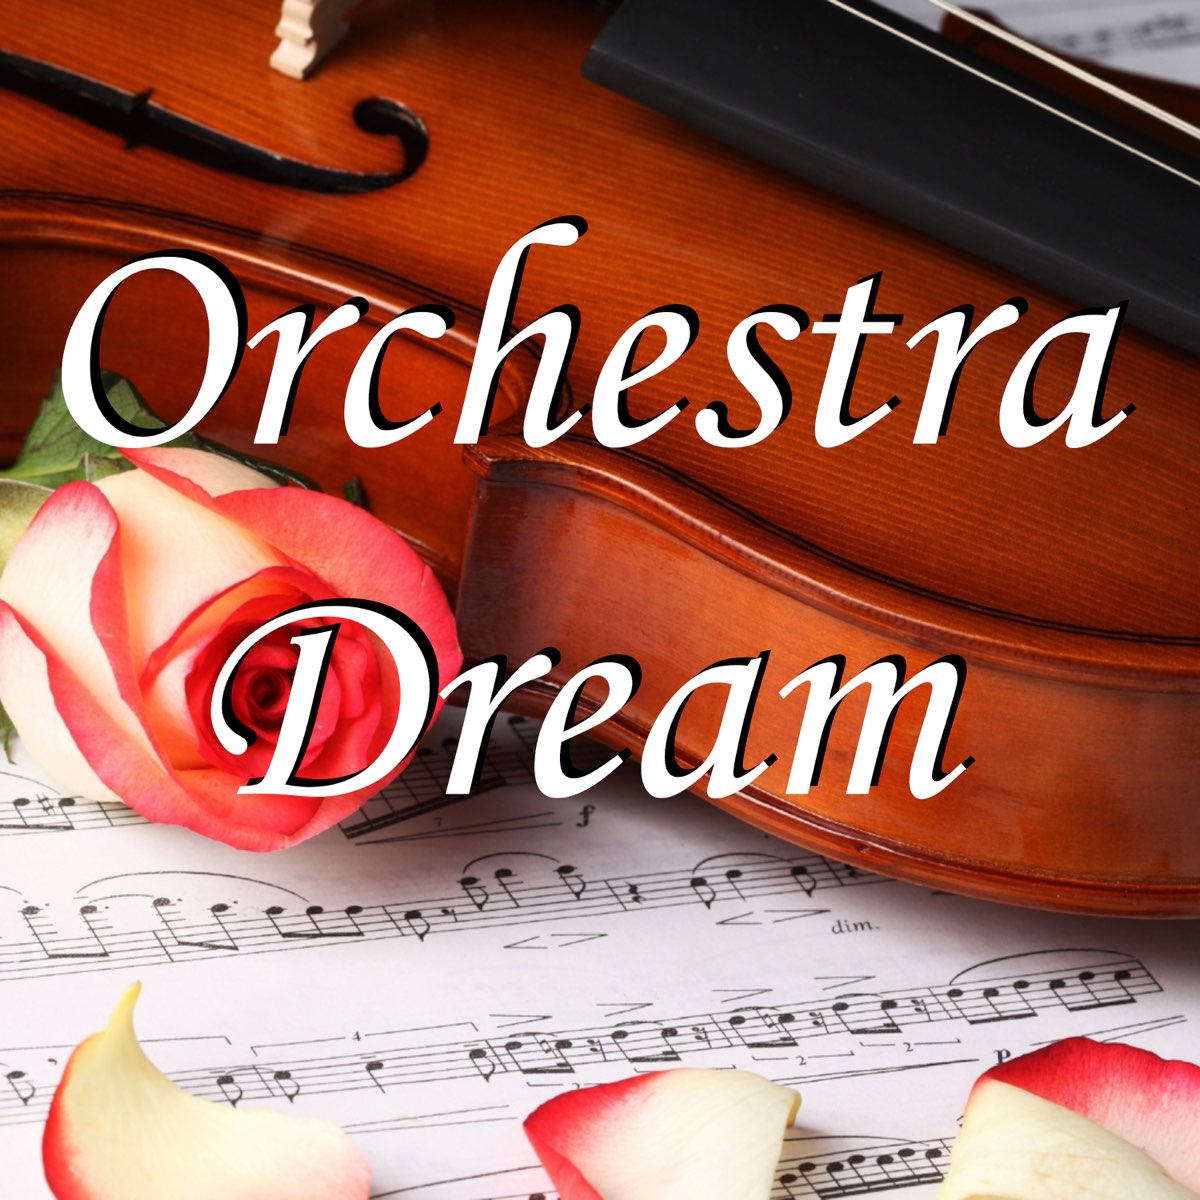 Dream orchestra